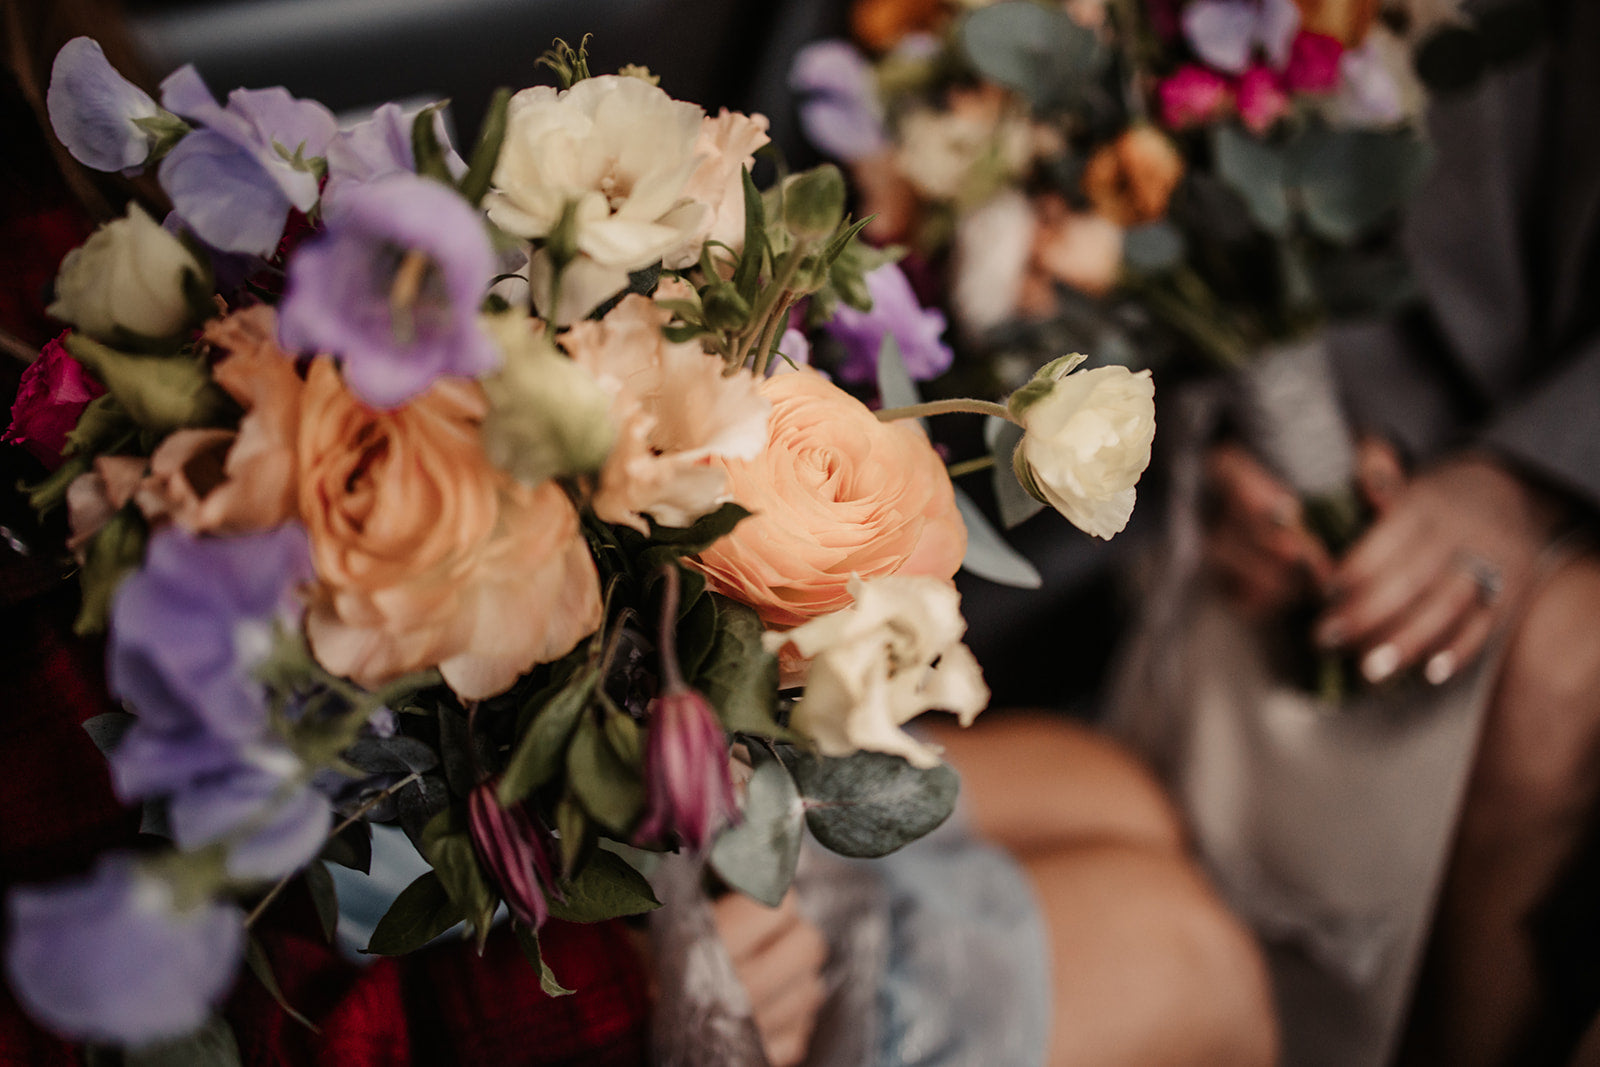 bespoke elopement bouquets with ranunculus by London wedding florist Botanique Workshop